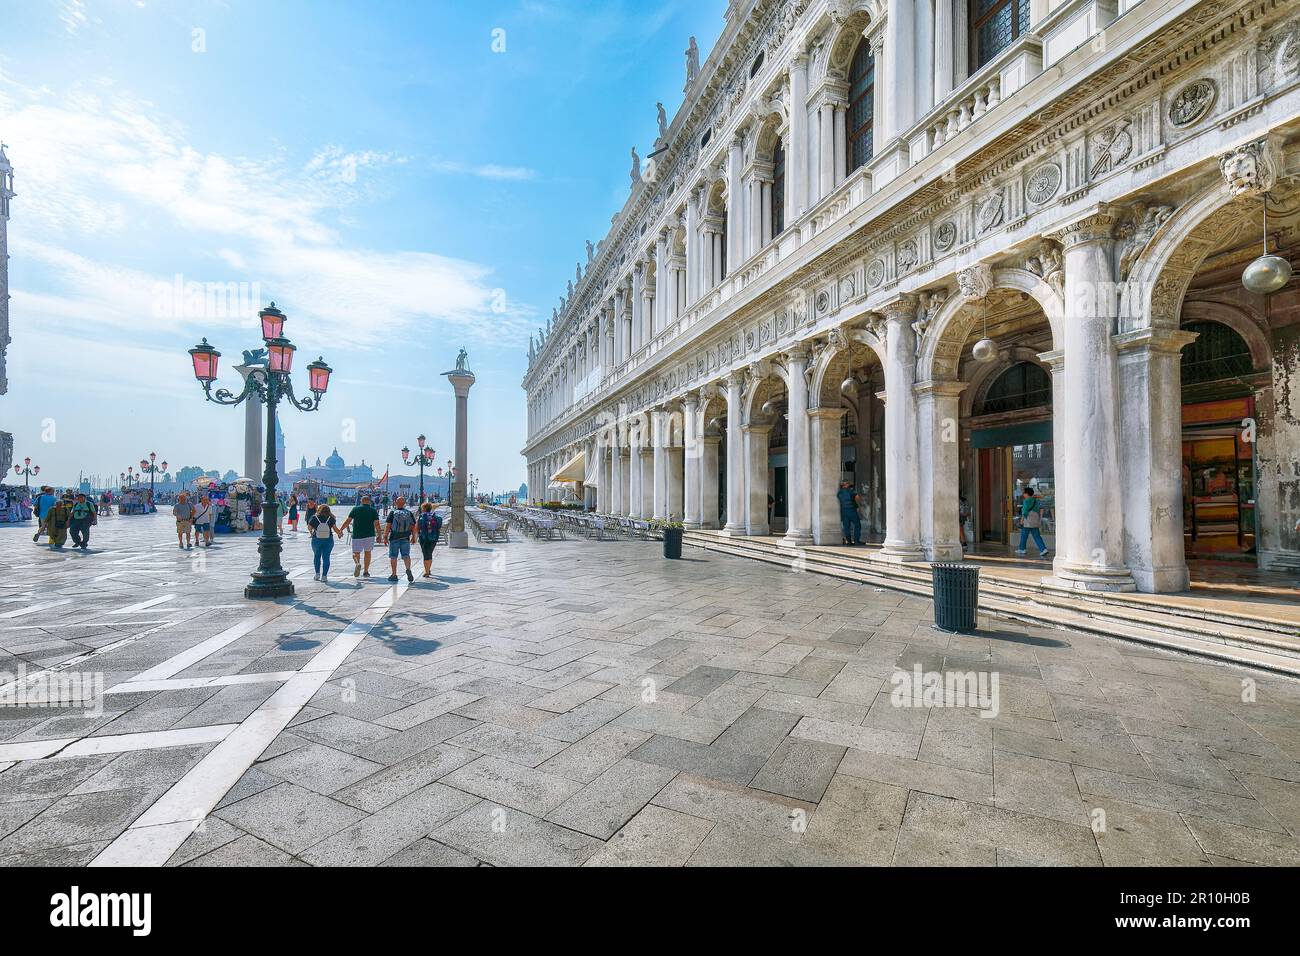 Fantastique paysage urbain de Venise avec place San Marco avec colonne de San Teodoro et Biblioteca Nazionale Marciana. Destination touristique populaire. Emplacement Banque D'Images